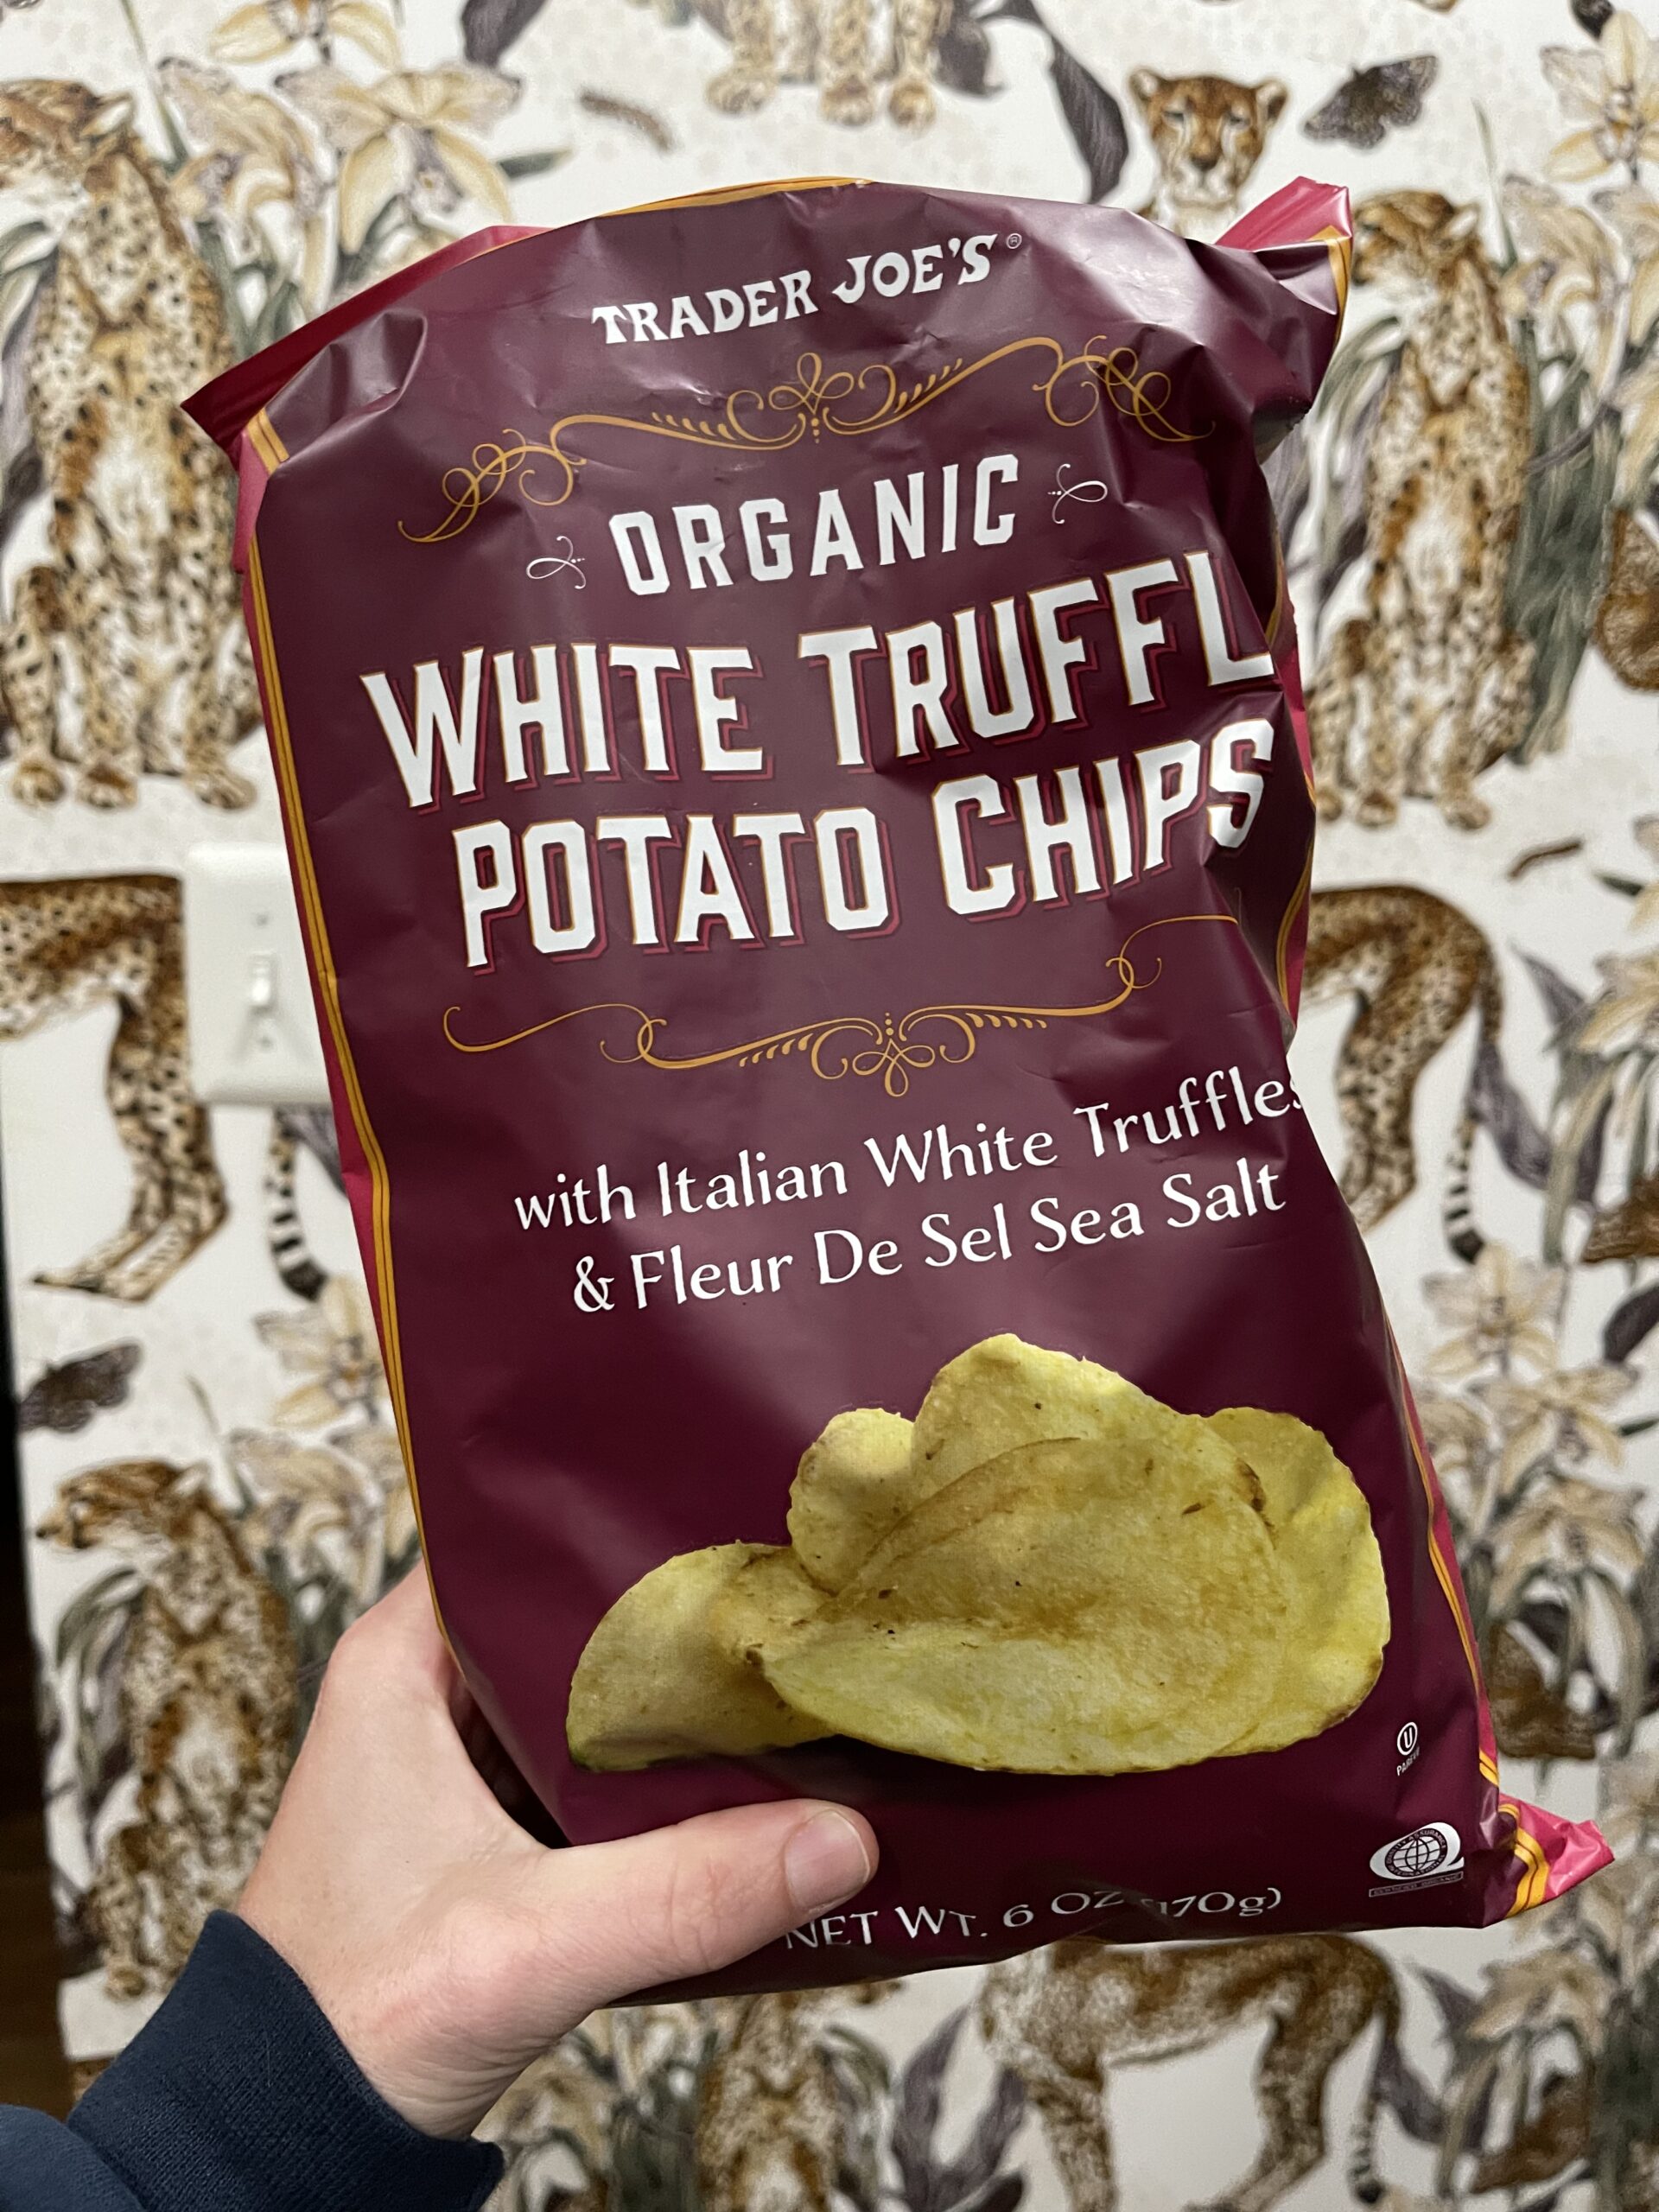 Trader Joe's White Truffle Potato Chips